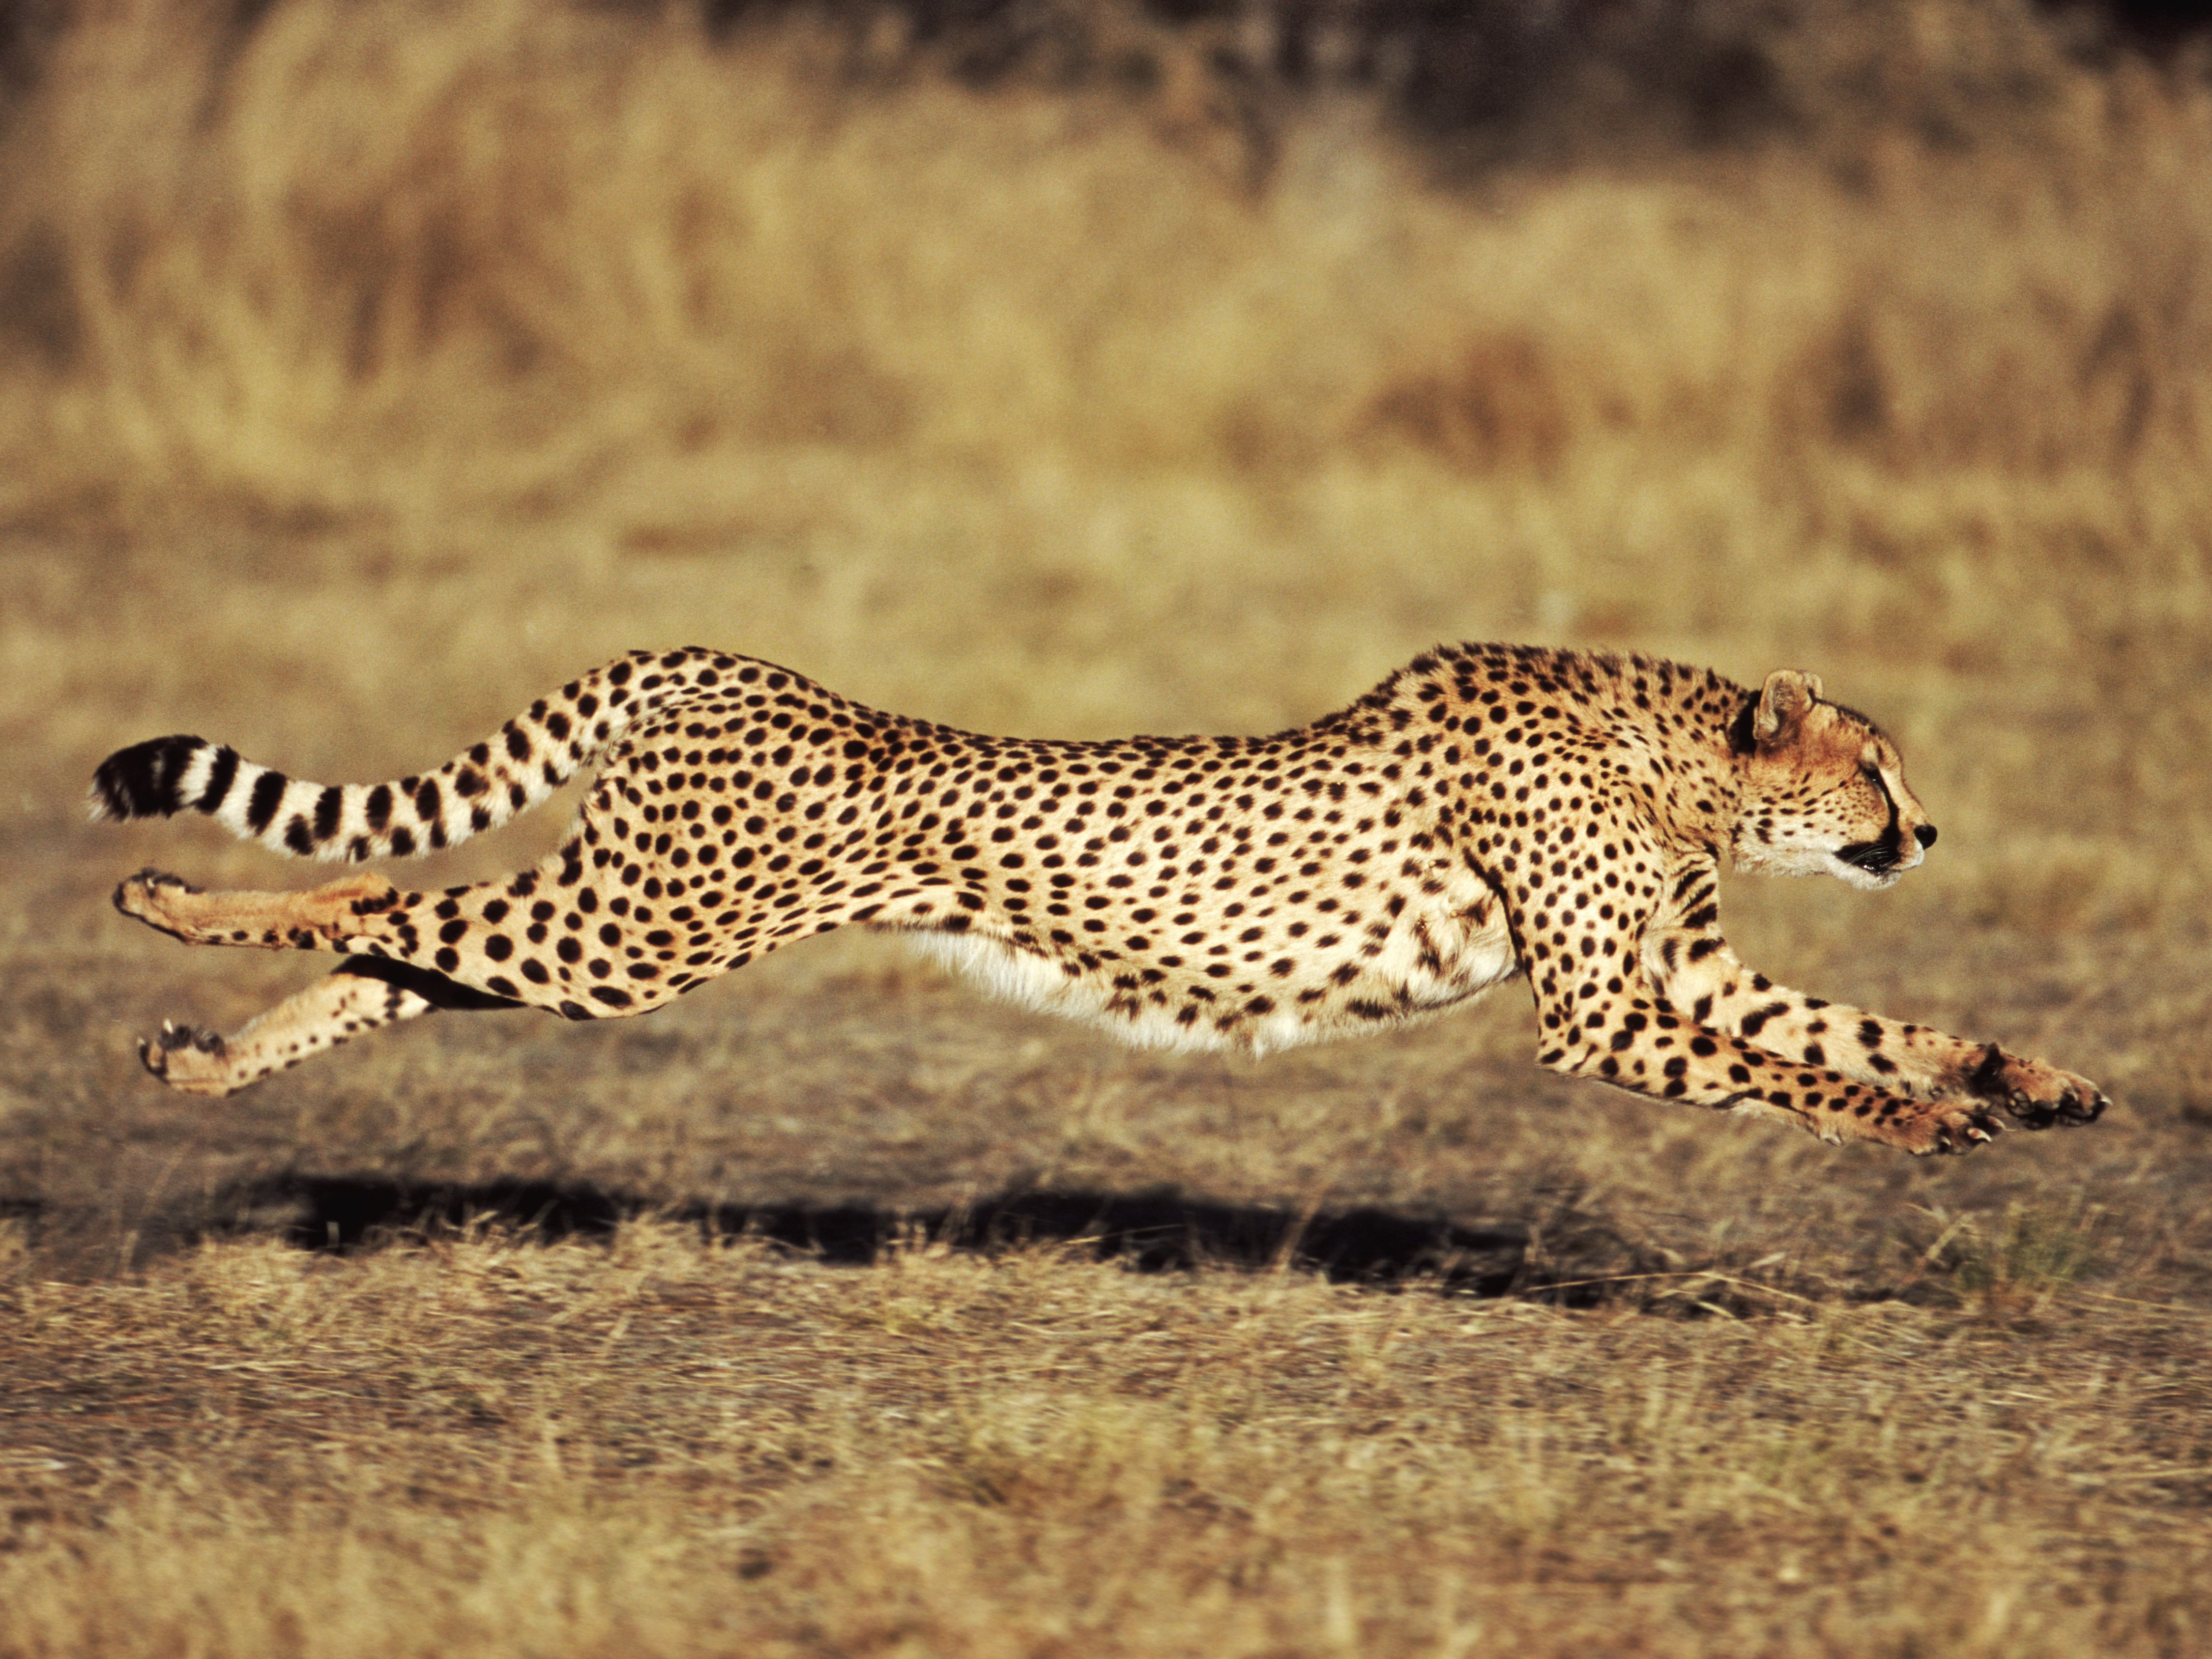 How fast can a cheetah run 2021?